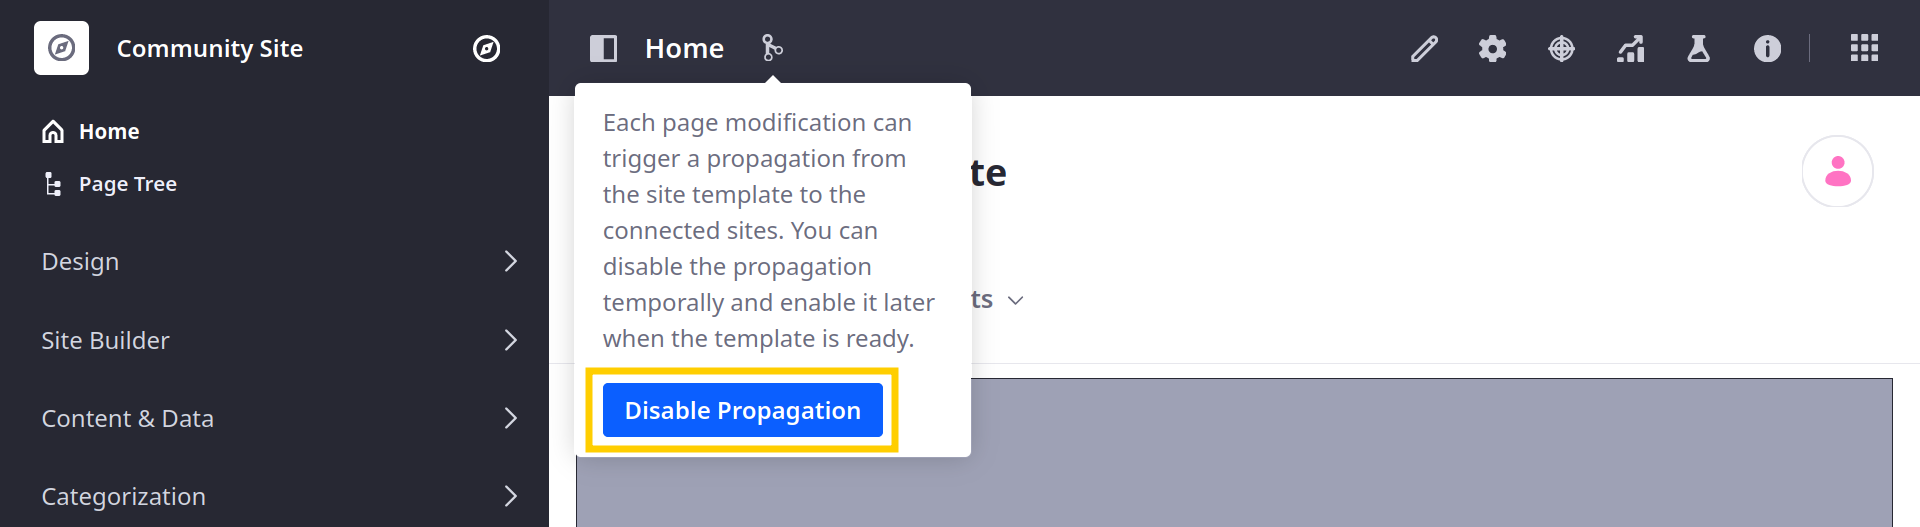 Propagationが有効な場合は、Disable Propagationをクリックします。